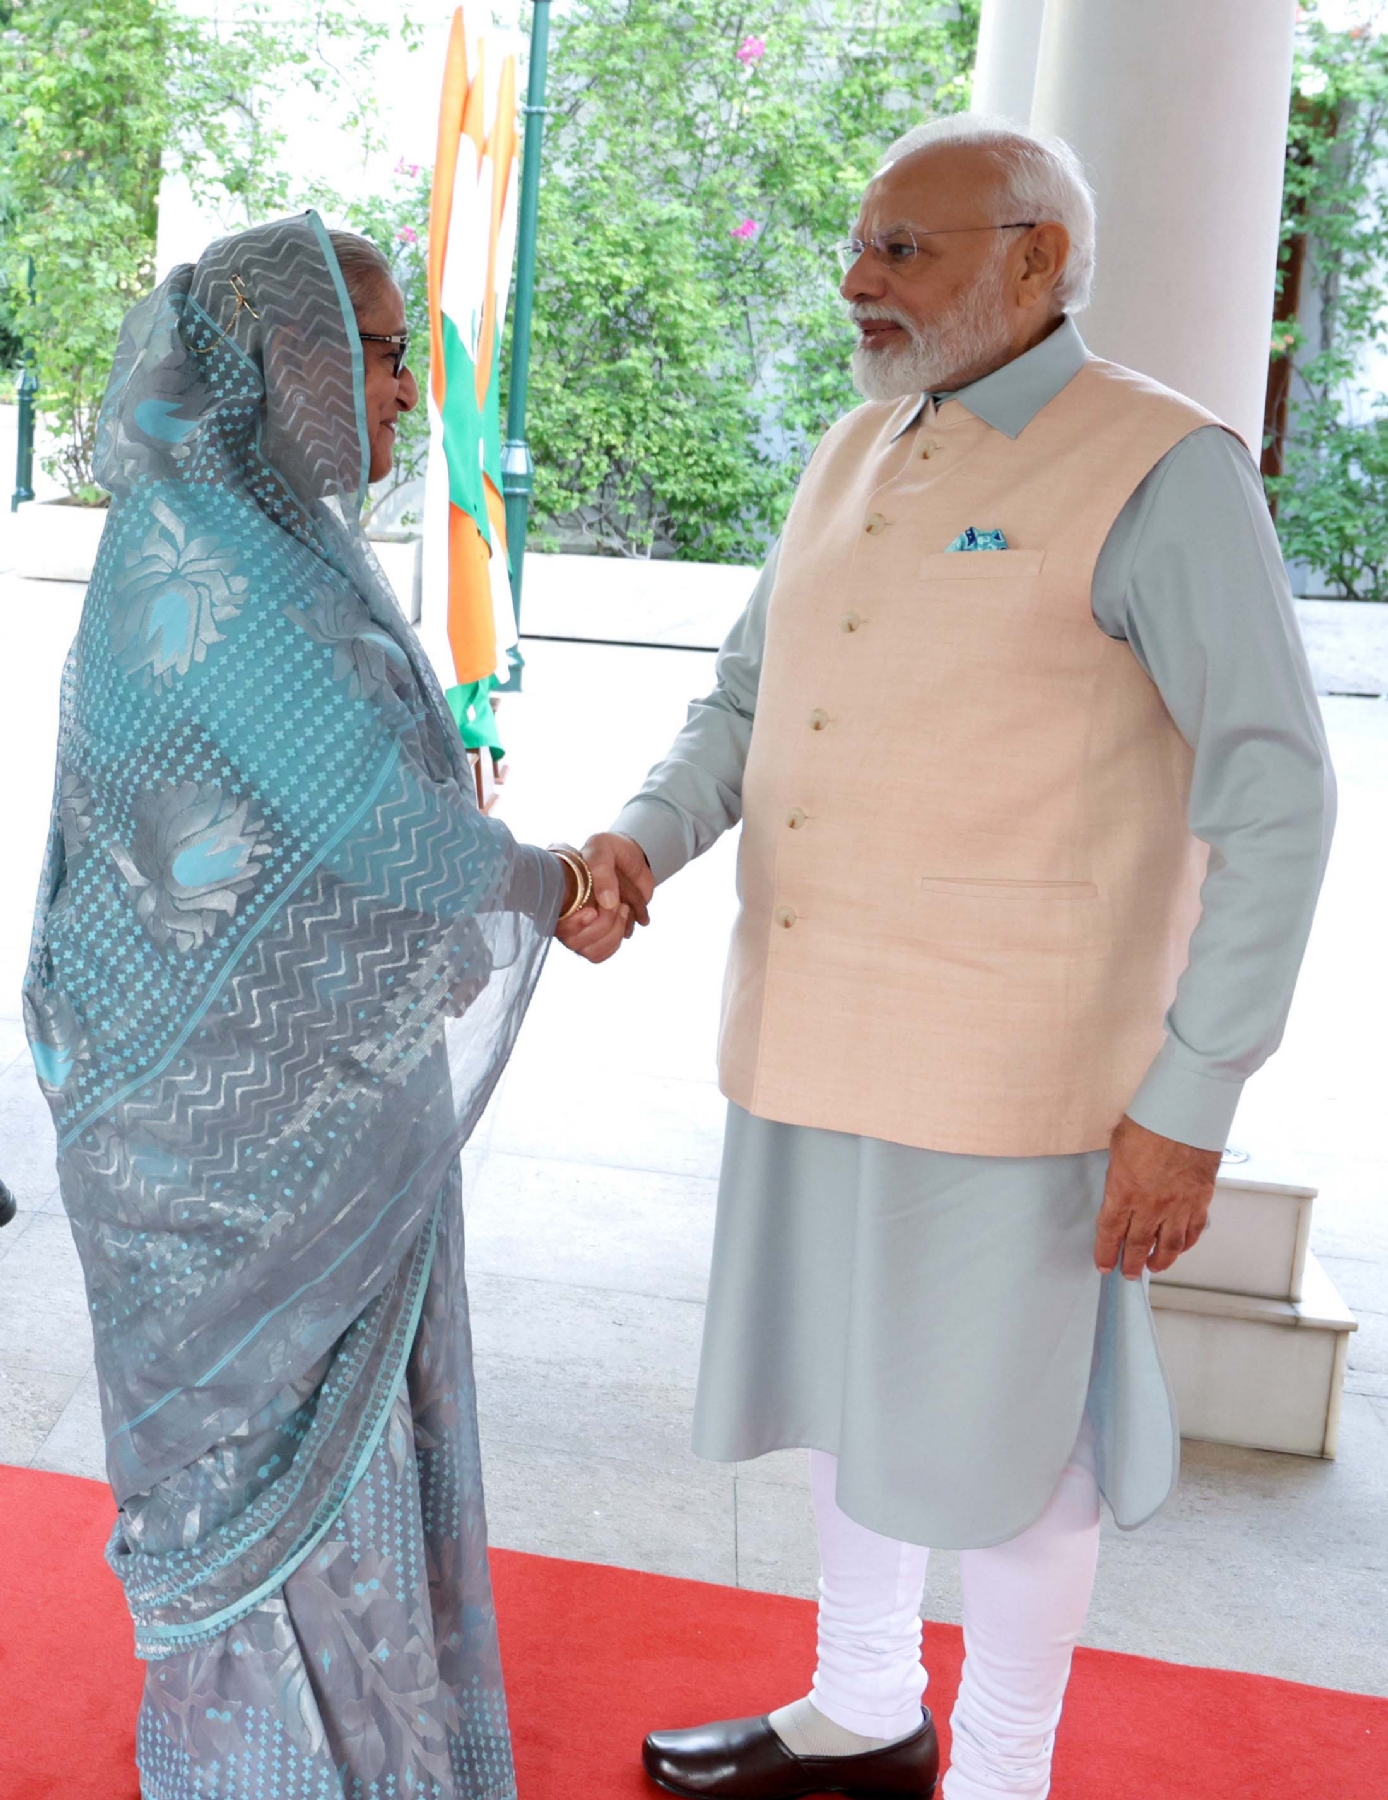 नई दिल्ली में शुक्रवार 08 सितंबर को प्रधानमंत्री नरेन्द्र मोदी और बांग्लादेश की प्रधानमंत्री सुश्री शेख हसीना के साथ द्विपक्षीय बैठक का दृश्य। हिन्दुस्थान समाचार/फोटो गणेश बिष्ट